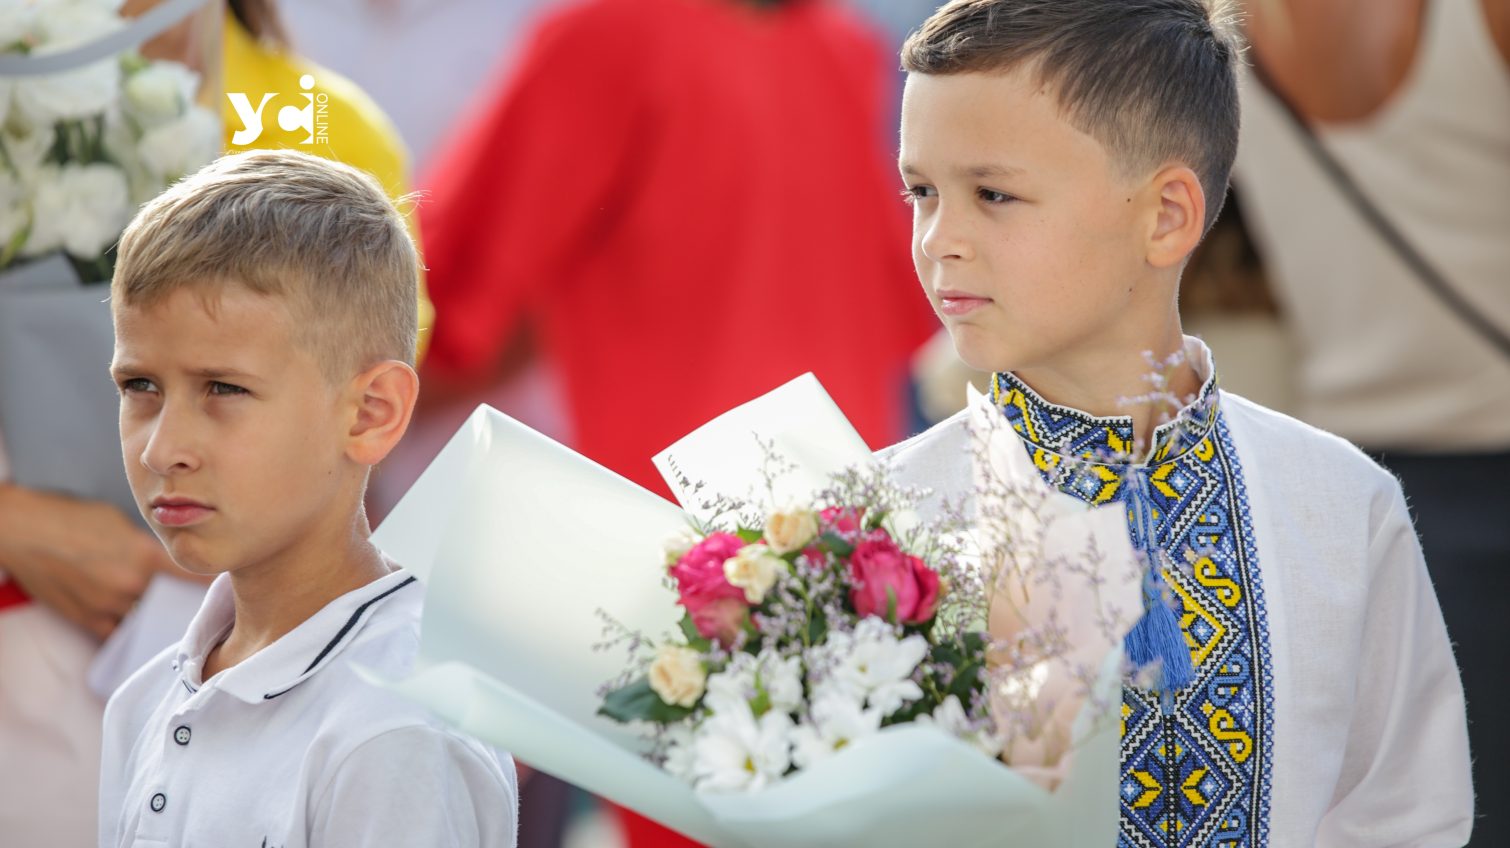 Дослідження: учителі скептично оцінюють рівень української своїх учнів «фото»